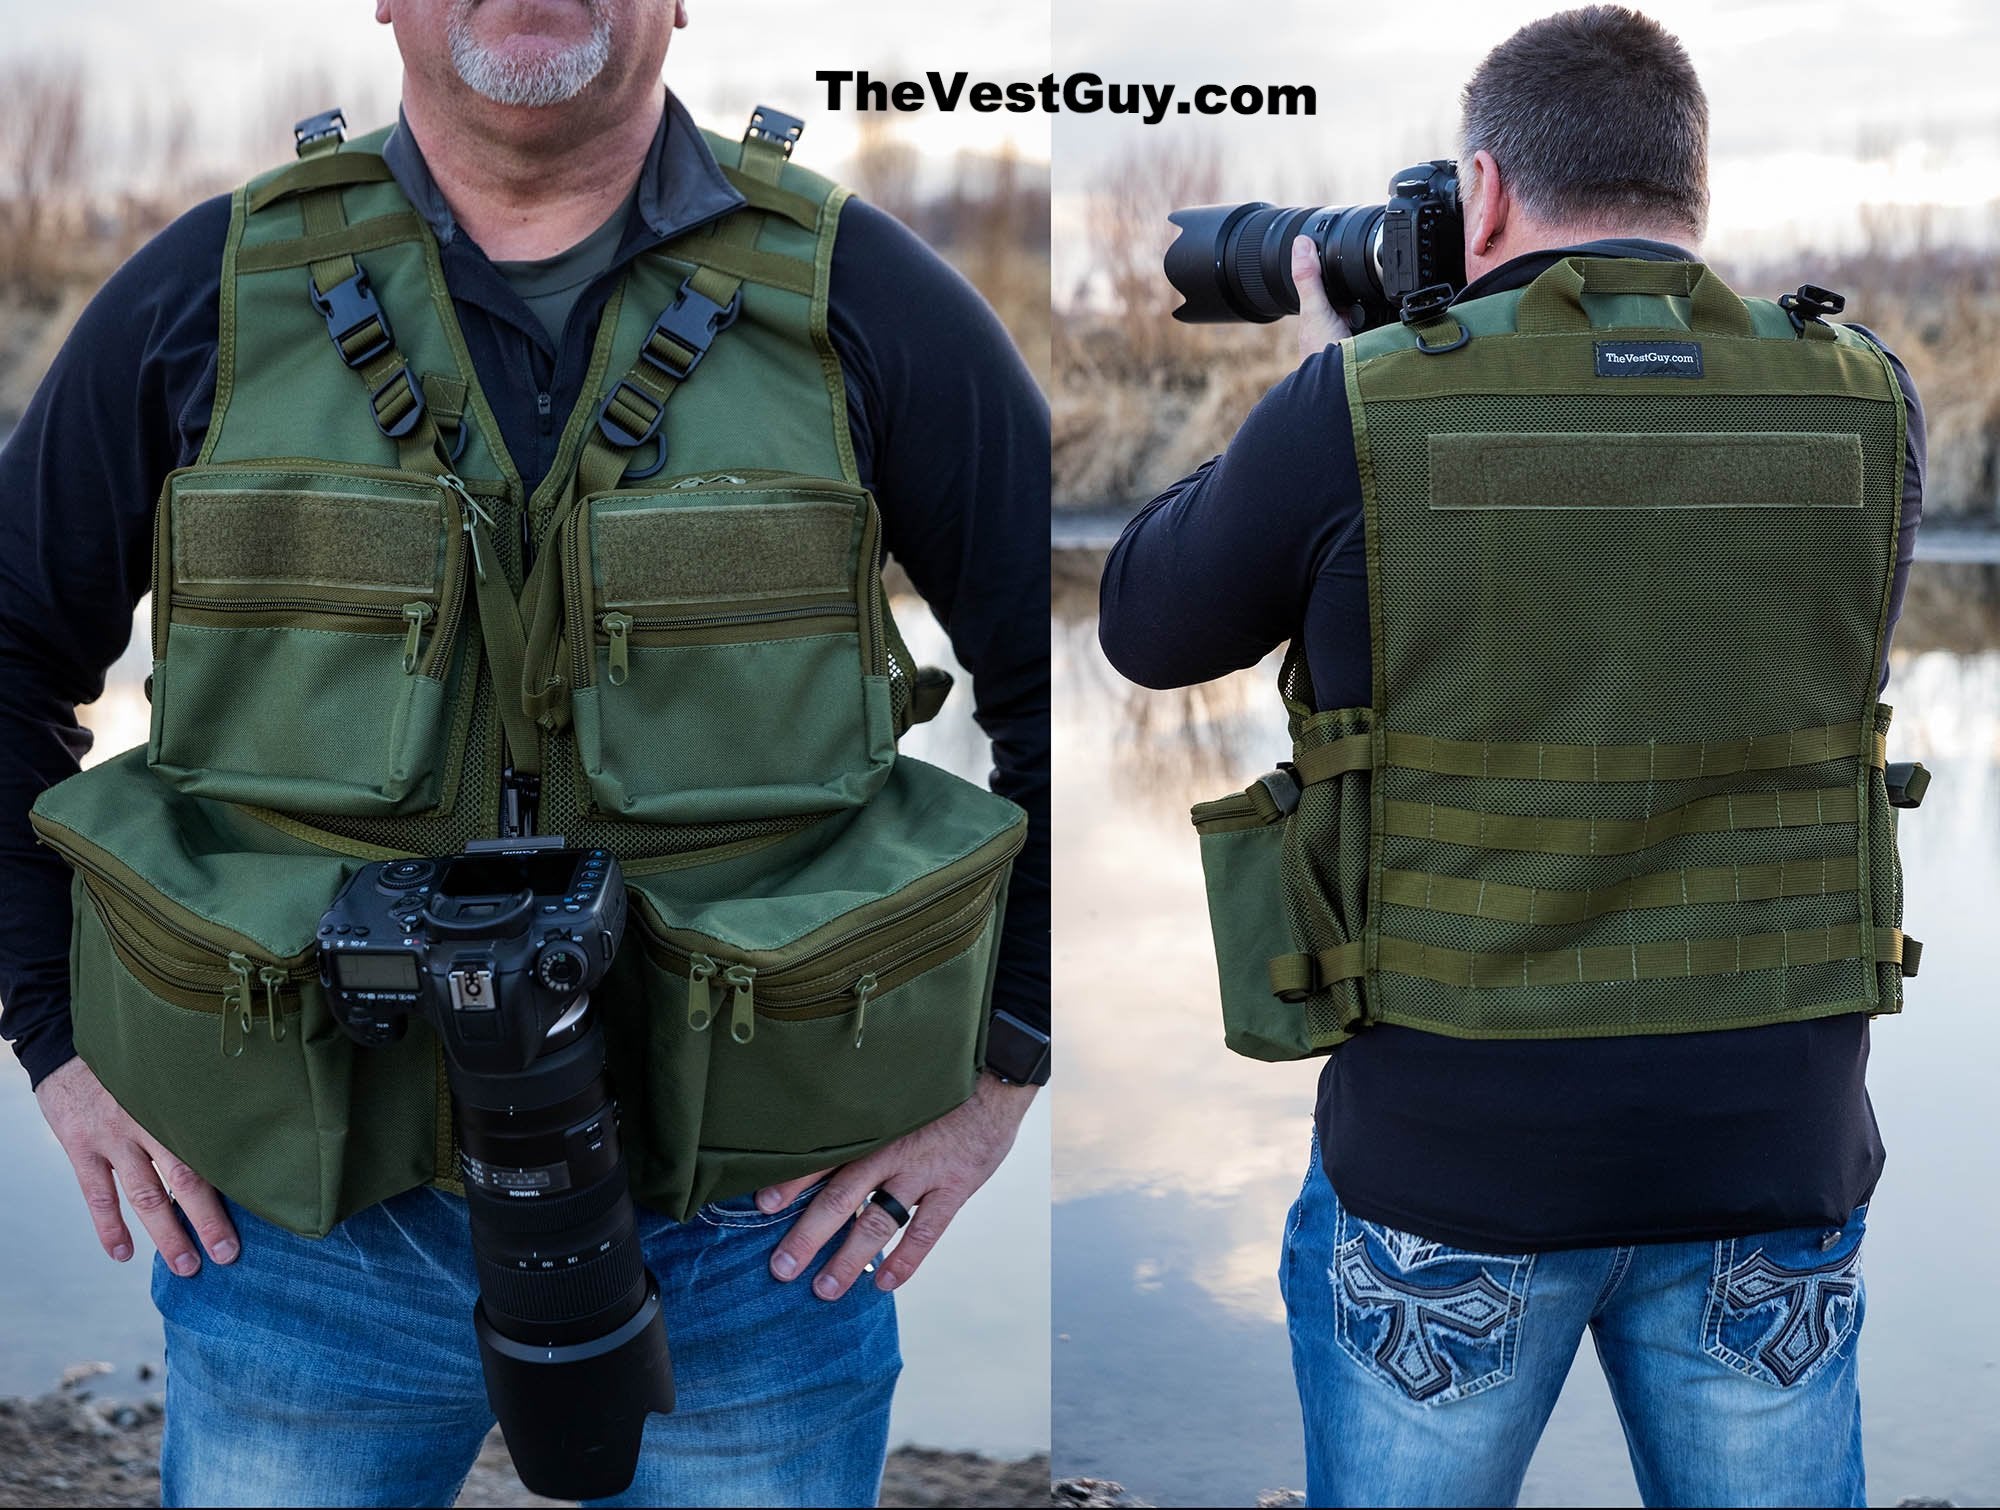 The Alaskan Photo Vest – The Vest Guy